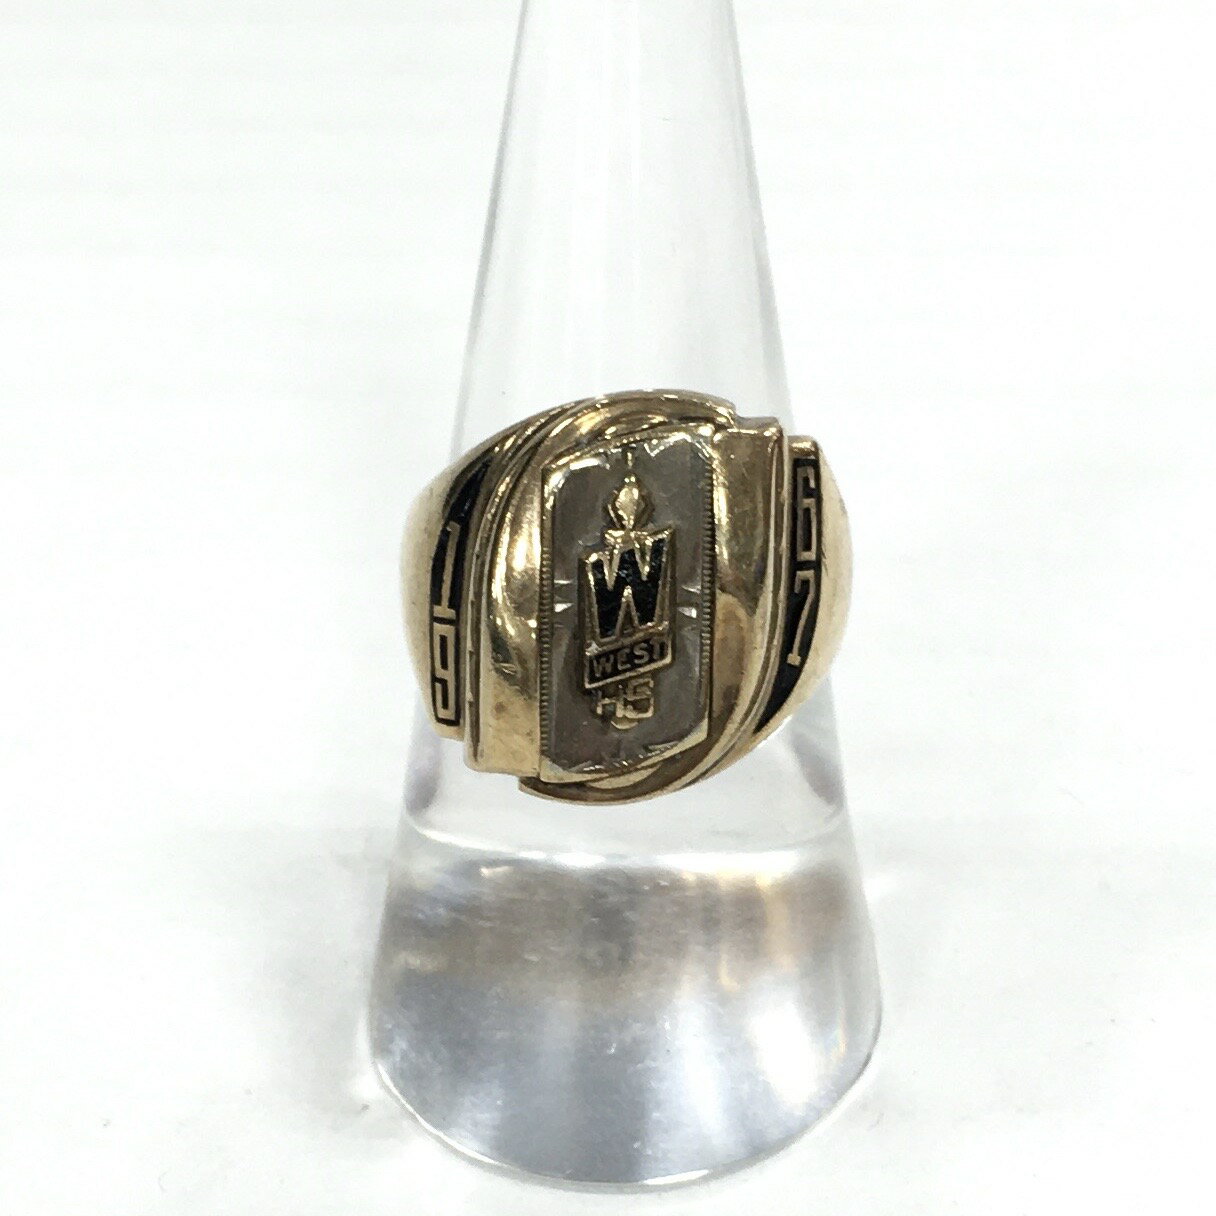 【送料無料】JOSTENS 1967年製 WEST Hight School Vintage College Ring / ジャスティンズ社製 ヴィンテージ カレッジリング 指輪 10K イエローゴールド size:14号【 中古】【006】